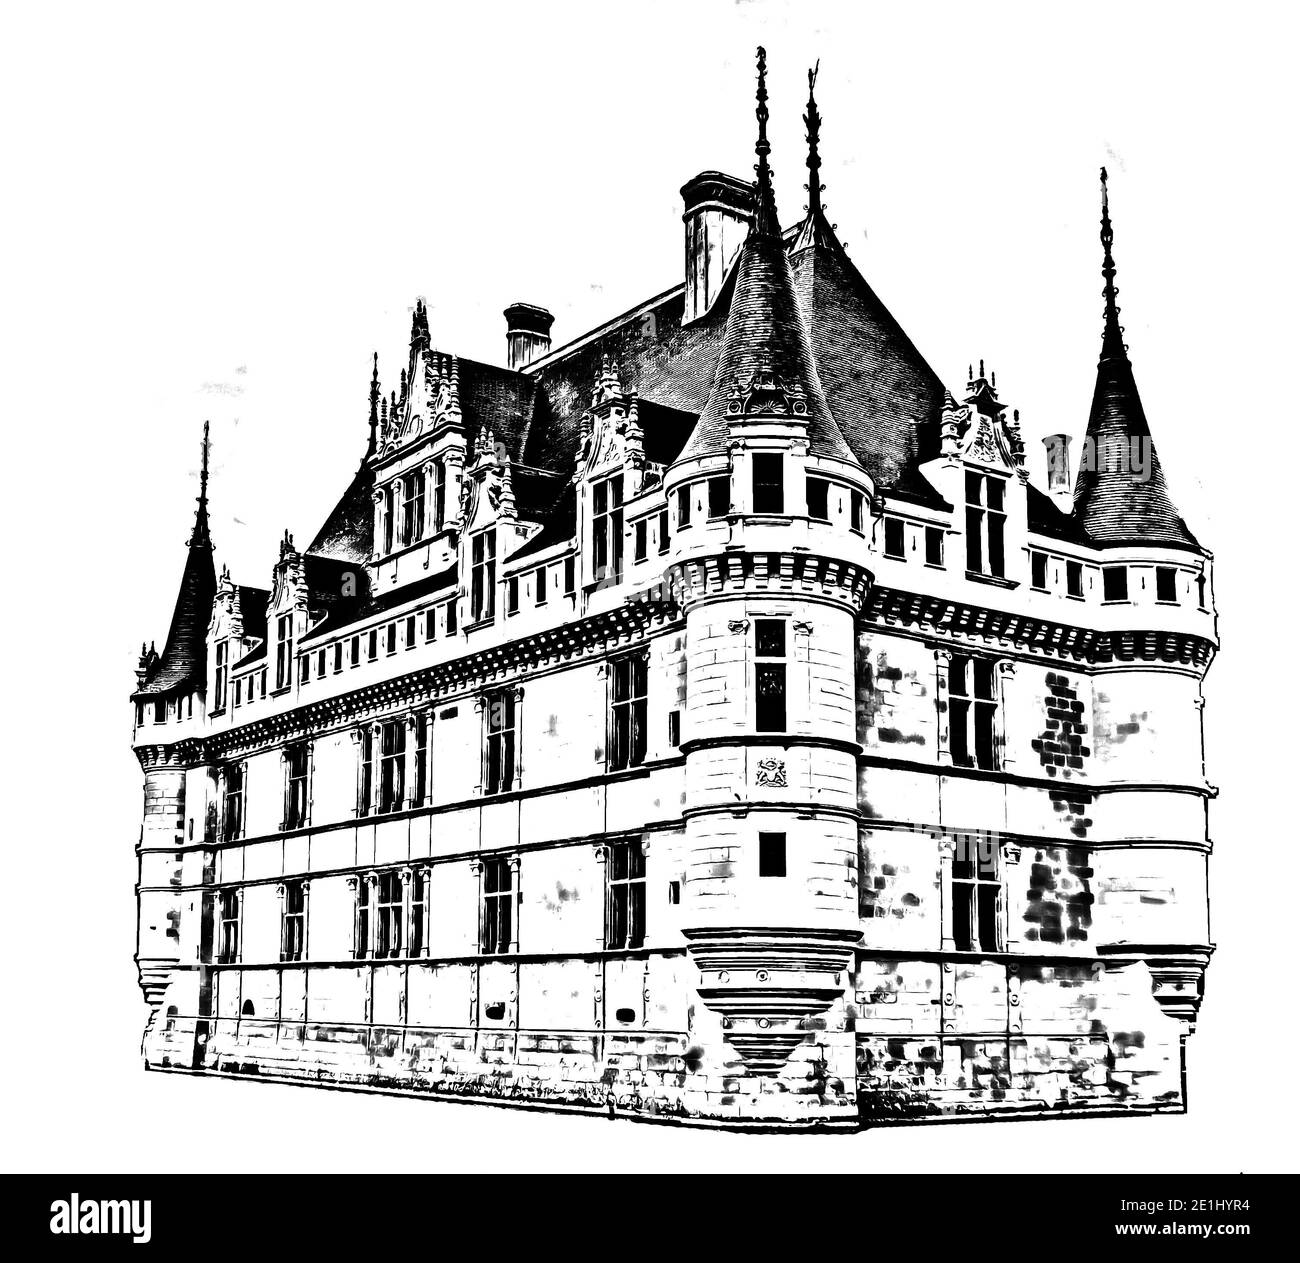 Grafisches Schloss Azay le Rideau (Schloss von Azay le Rideau) auf weißem Hintergrund, Indre et Loire, Loire-Tal, Frankreich. Bleistiftzeichnung. Stockfoto